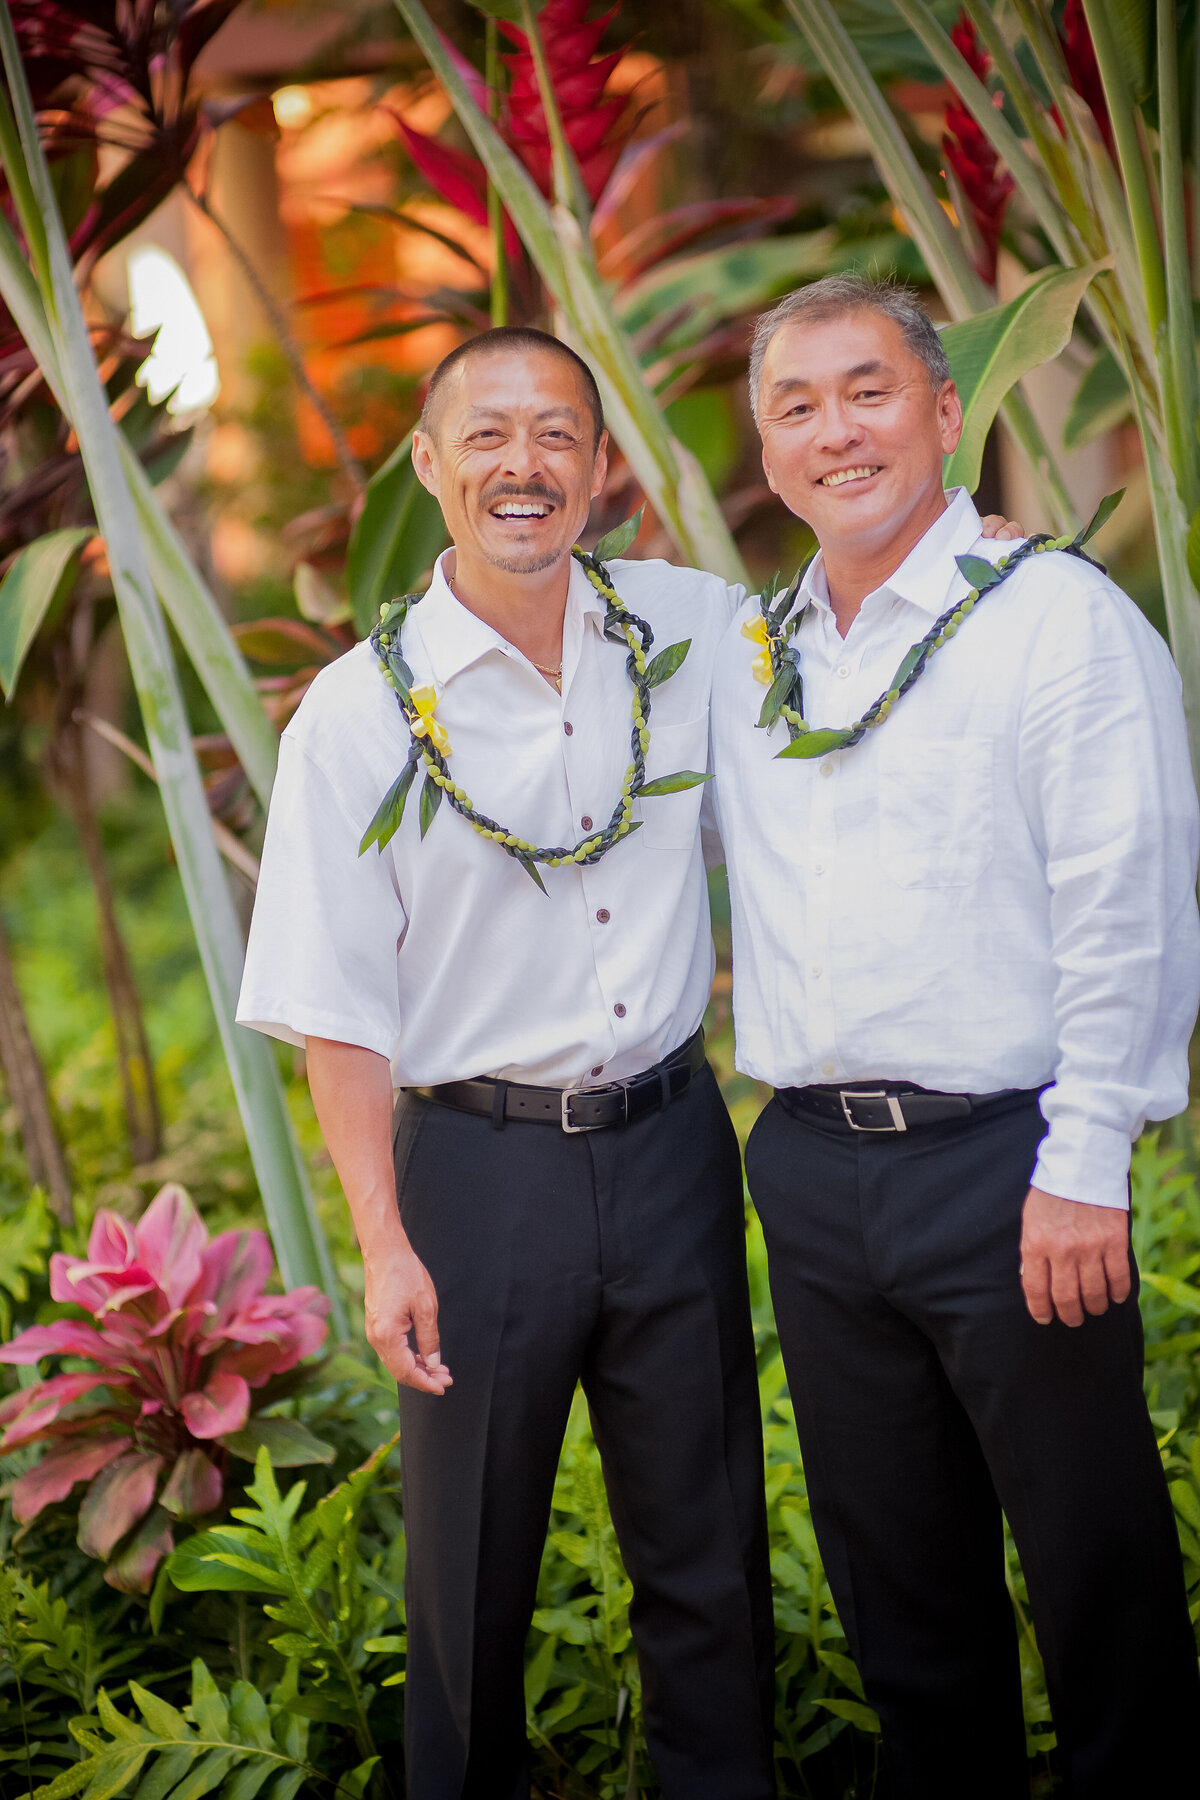 Groomsmen Pose for a Photo at the Royal Hawaiian Hotel